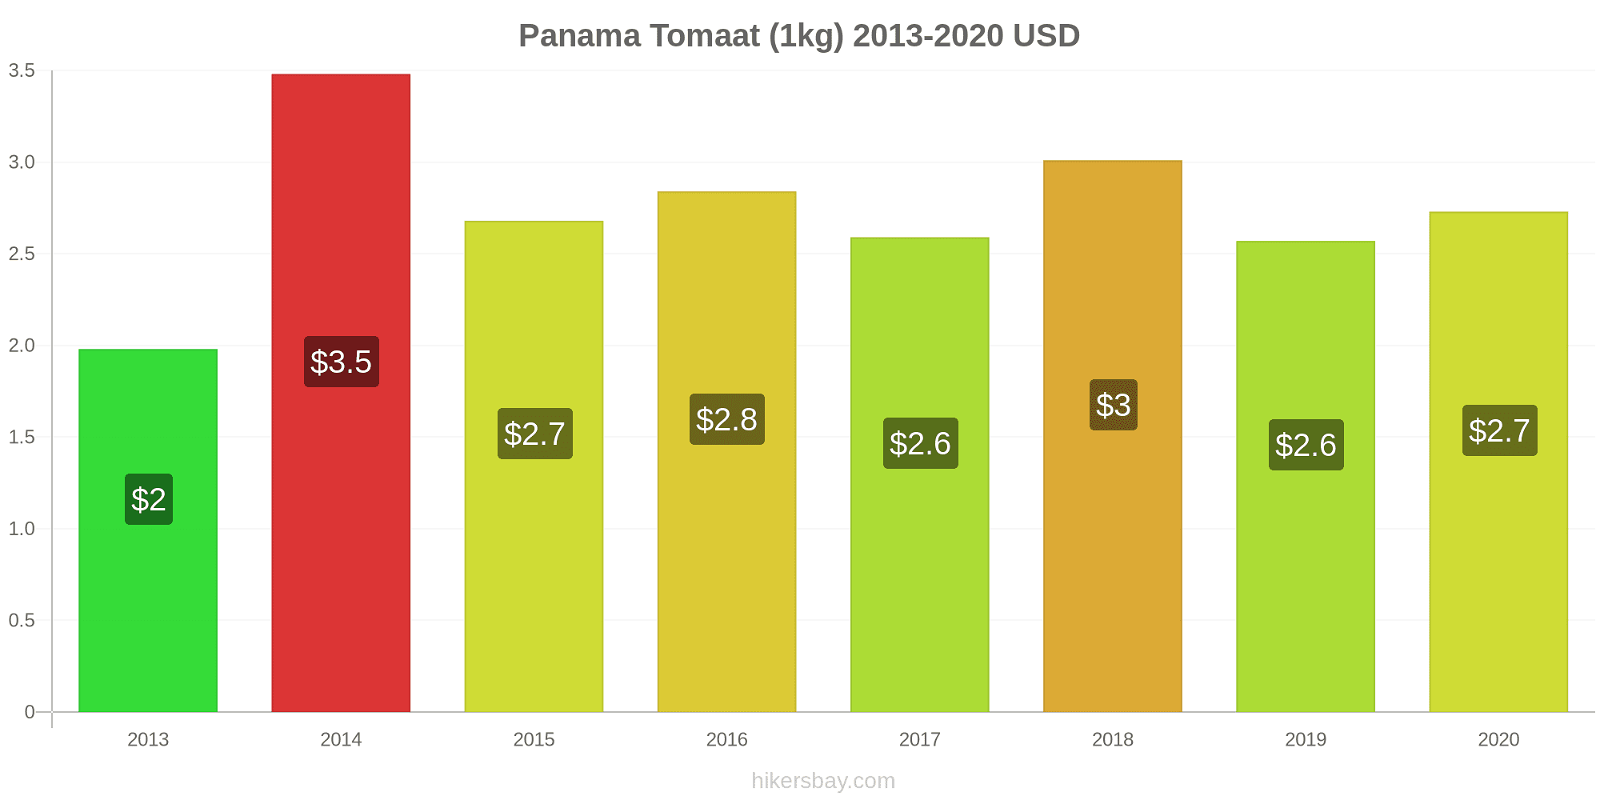 Panama prijswijzigingen Tomaat (1kg) hikersbay.com